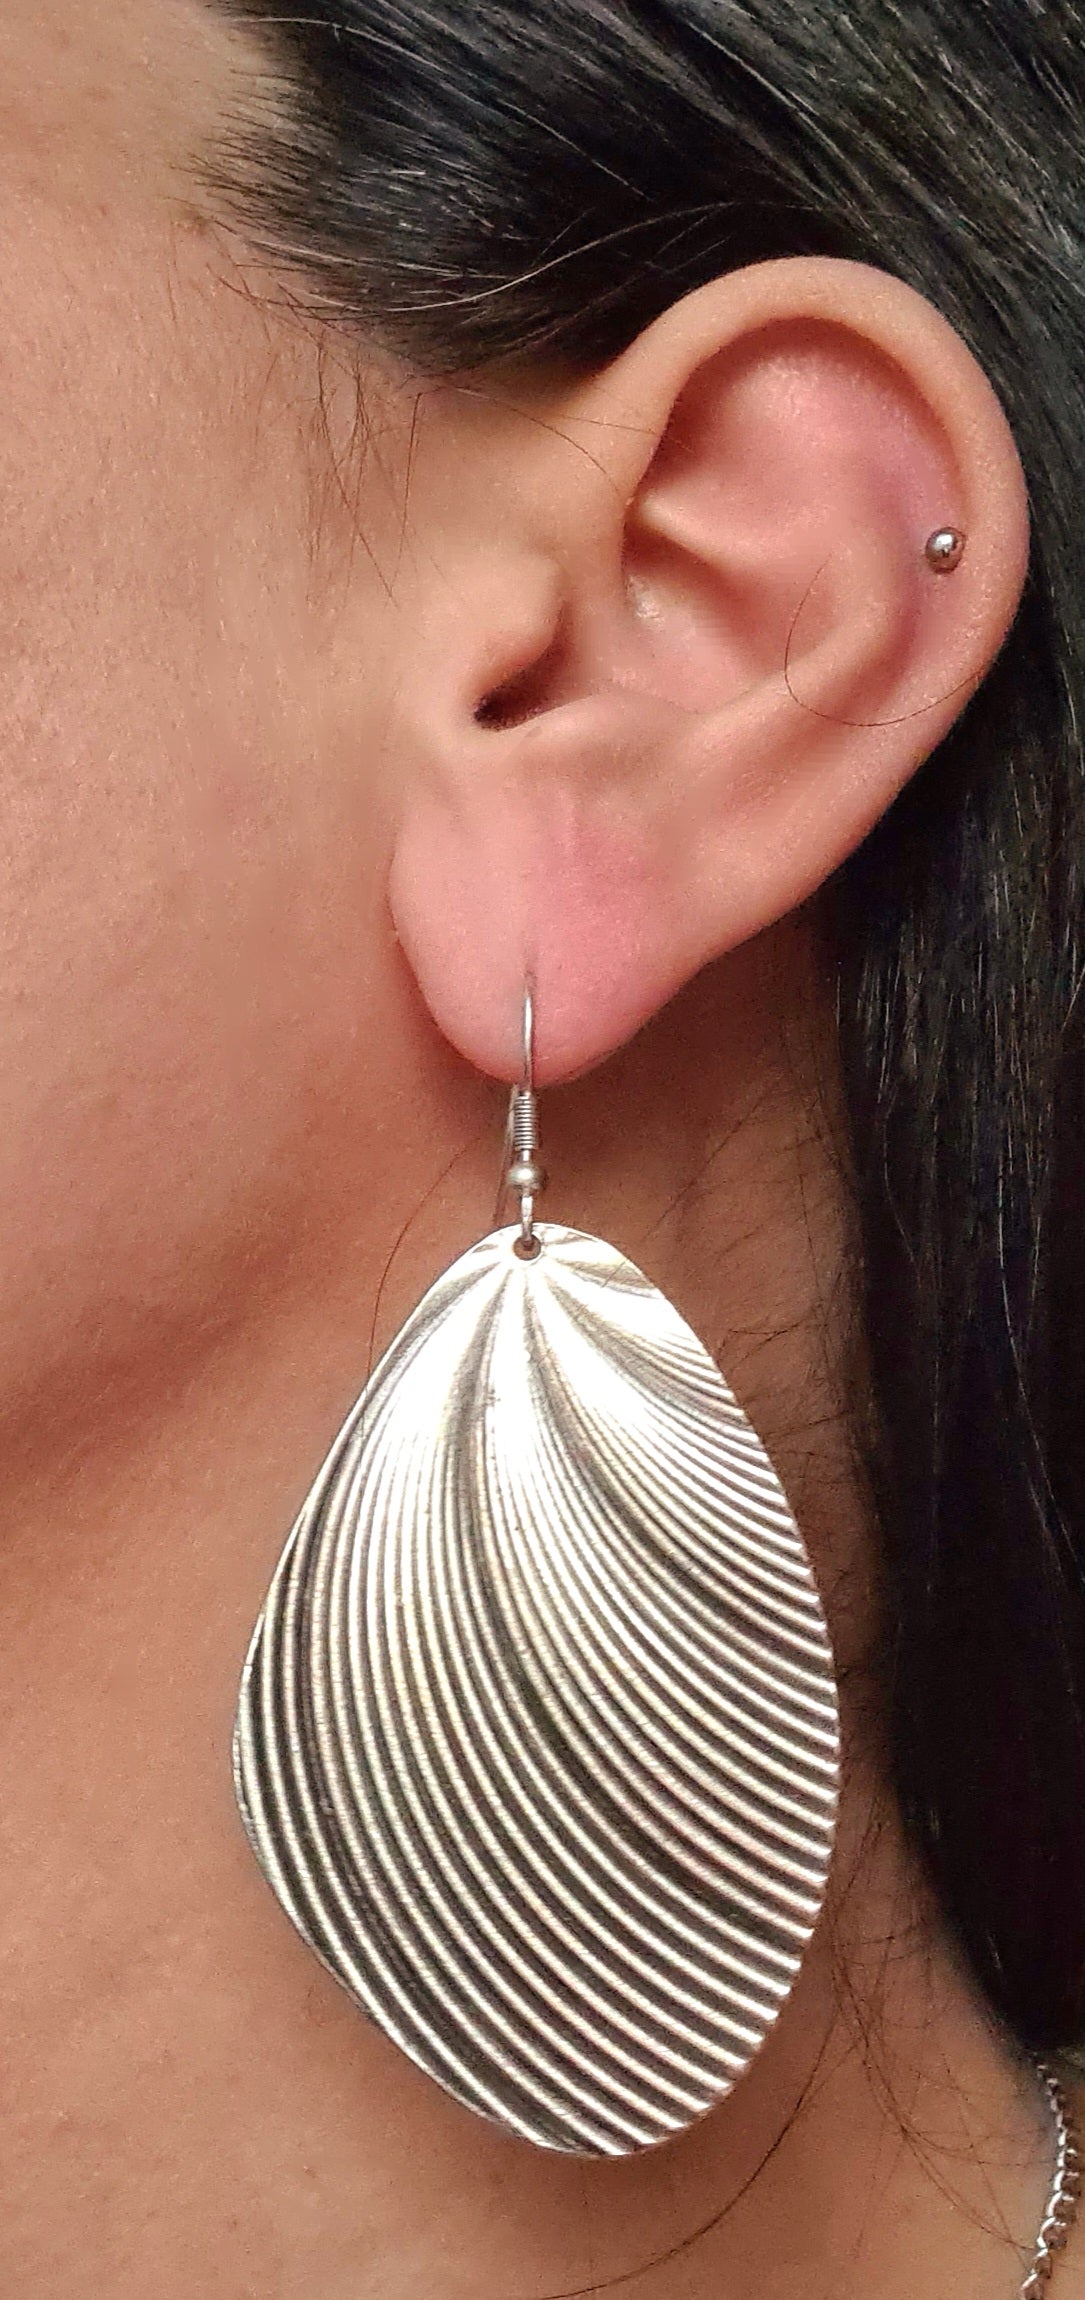 Anneke earrings silver filigree pattern.